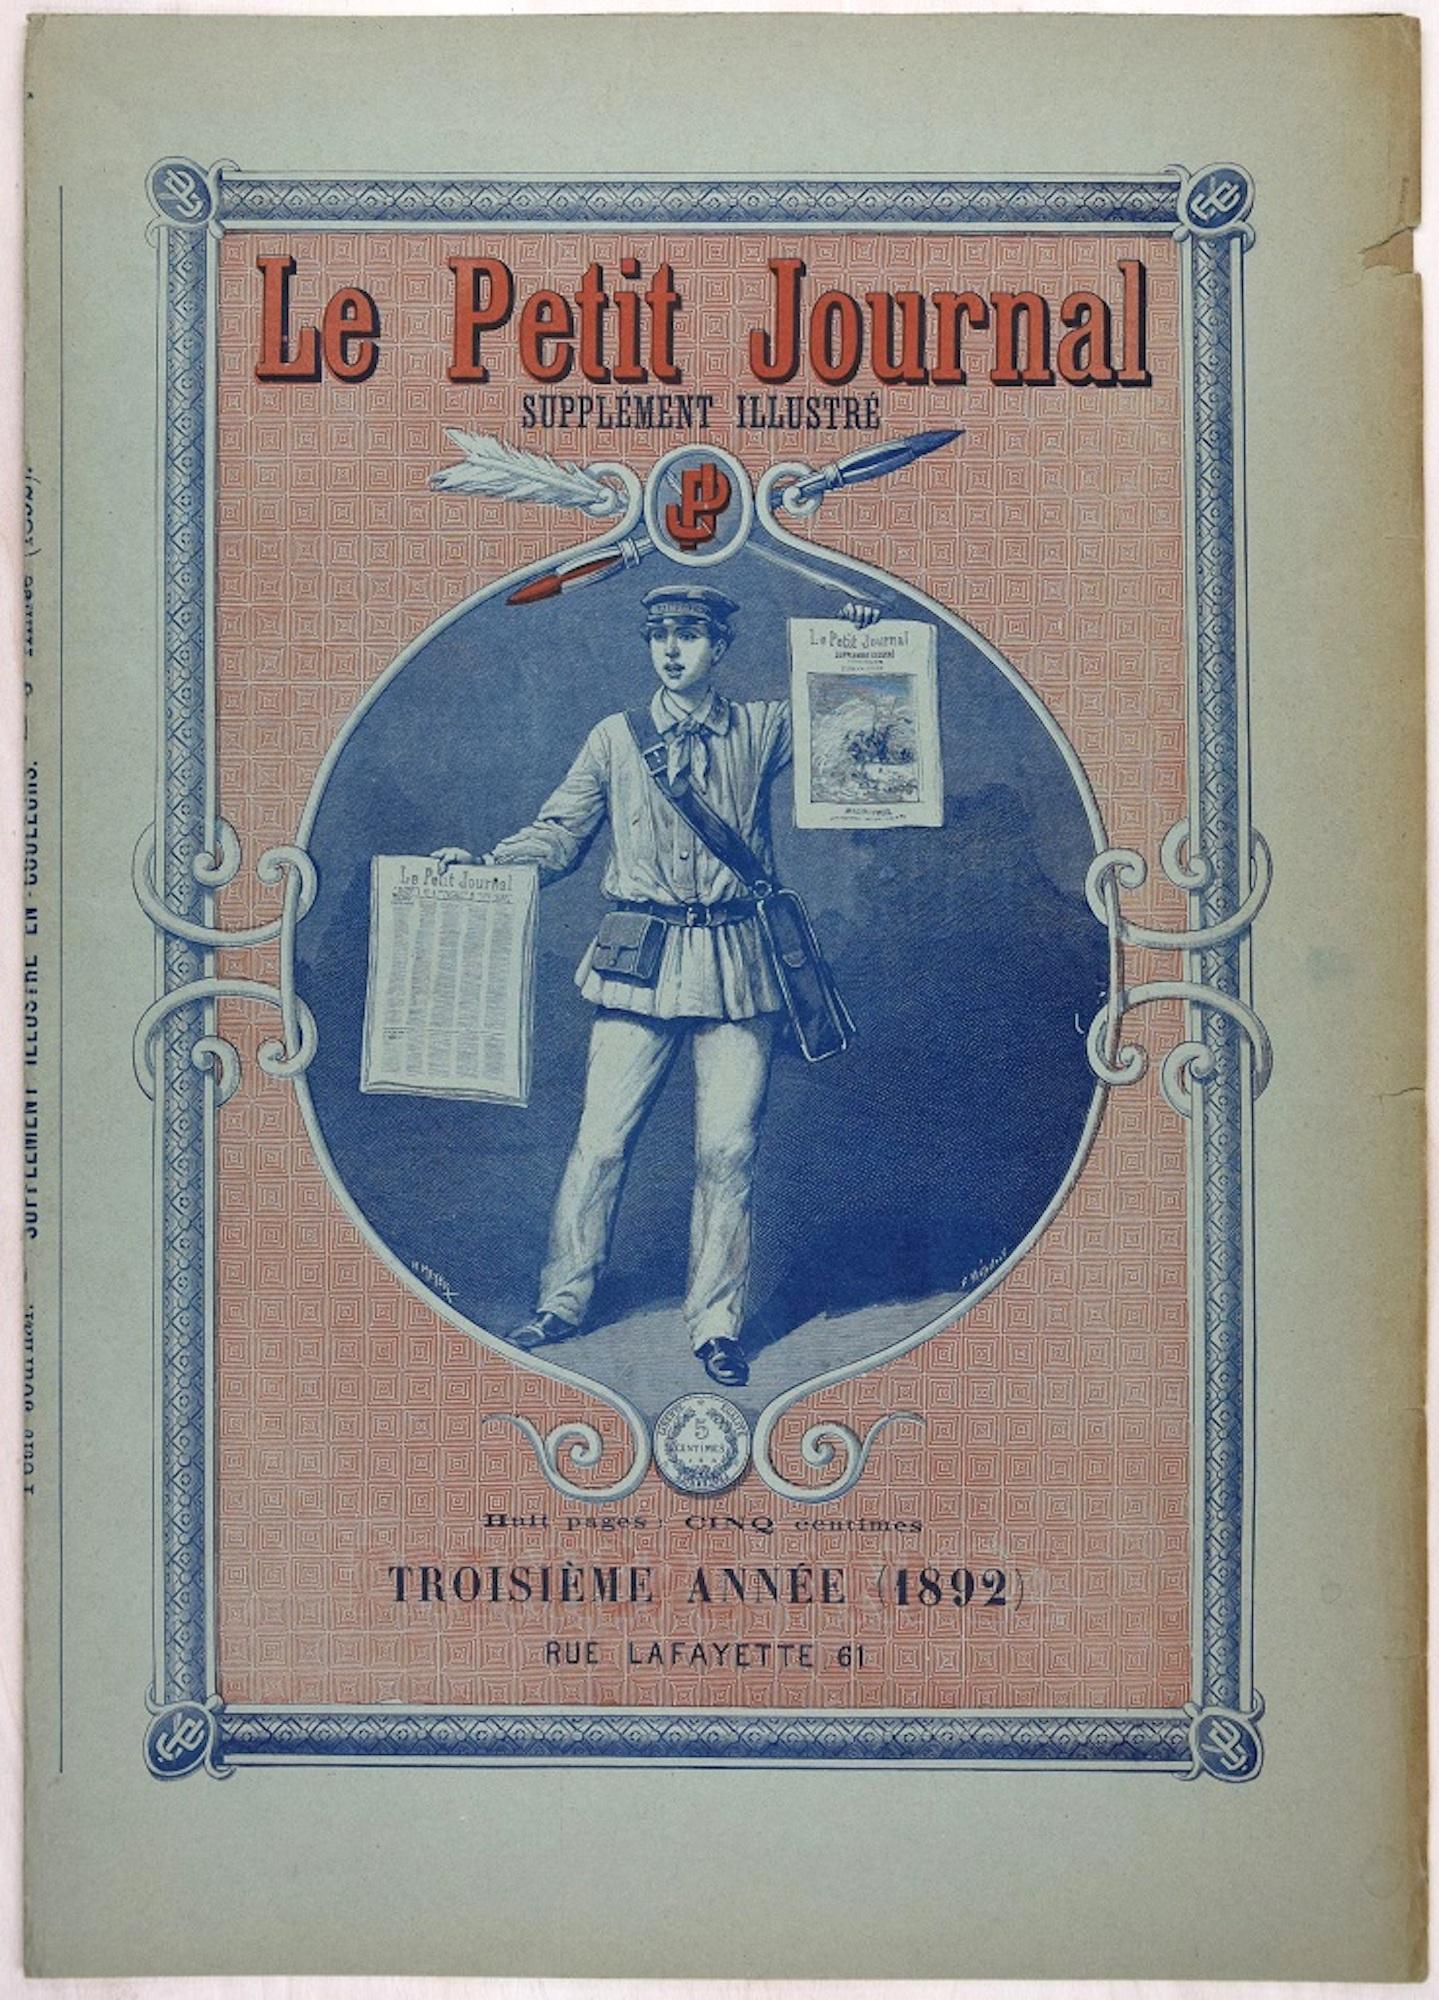 Le Petit Journal - Vintage Poster - 1892